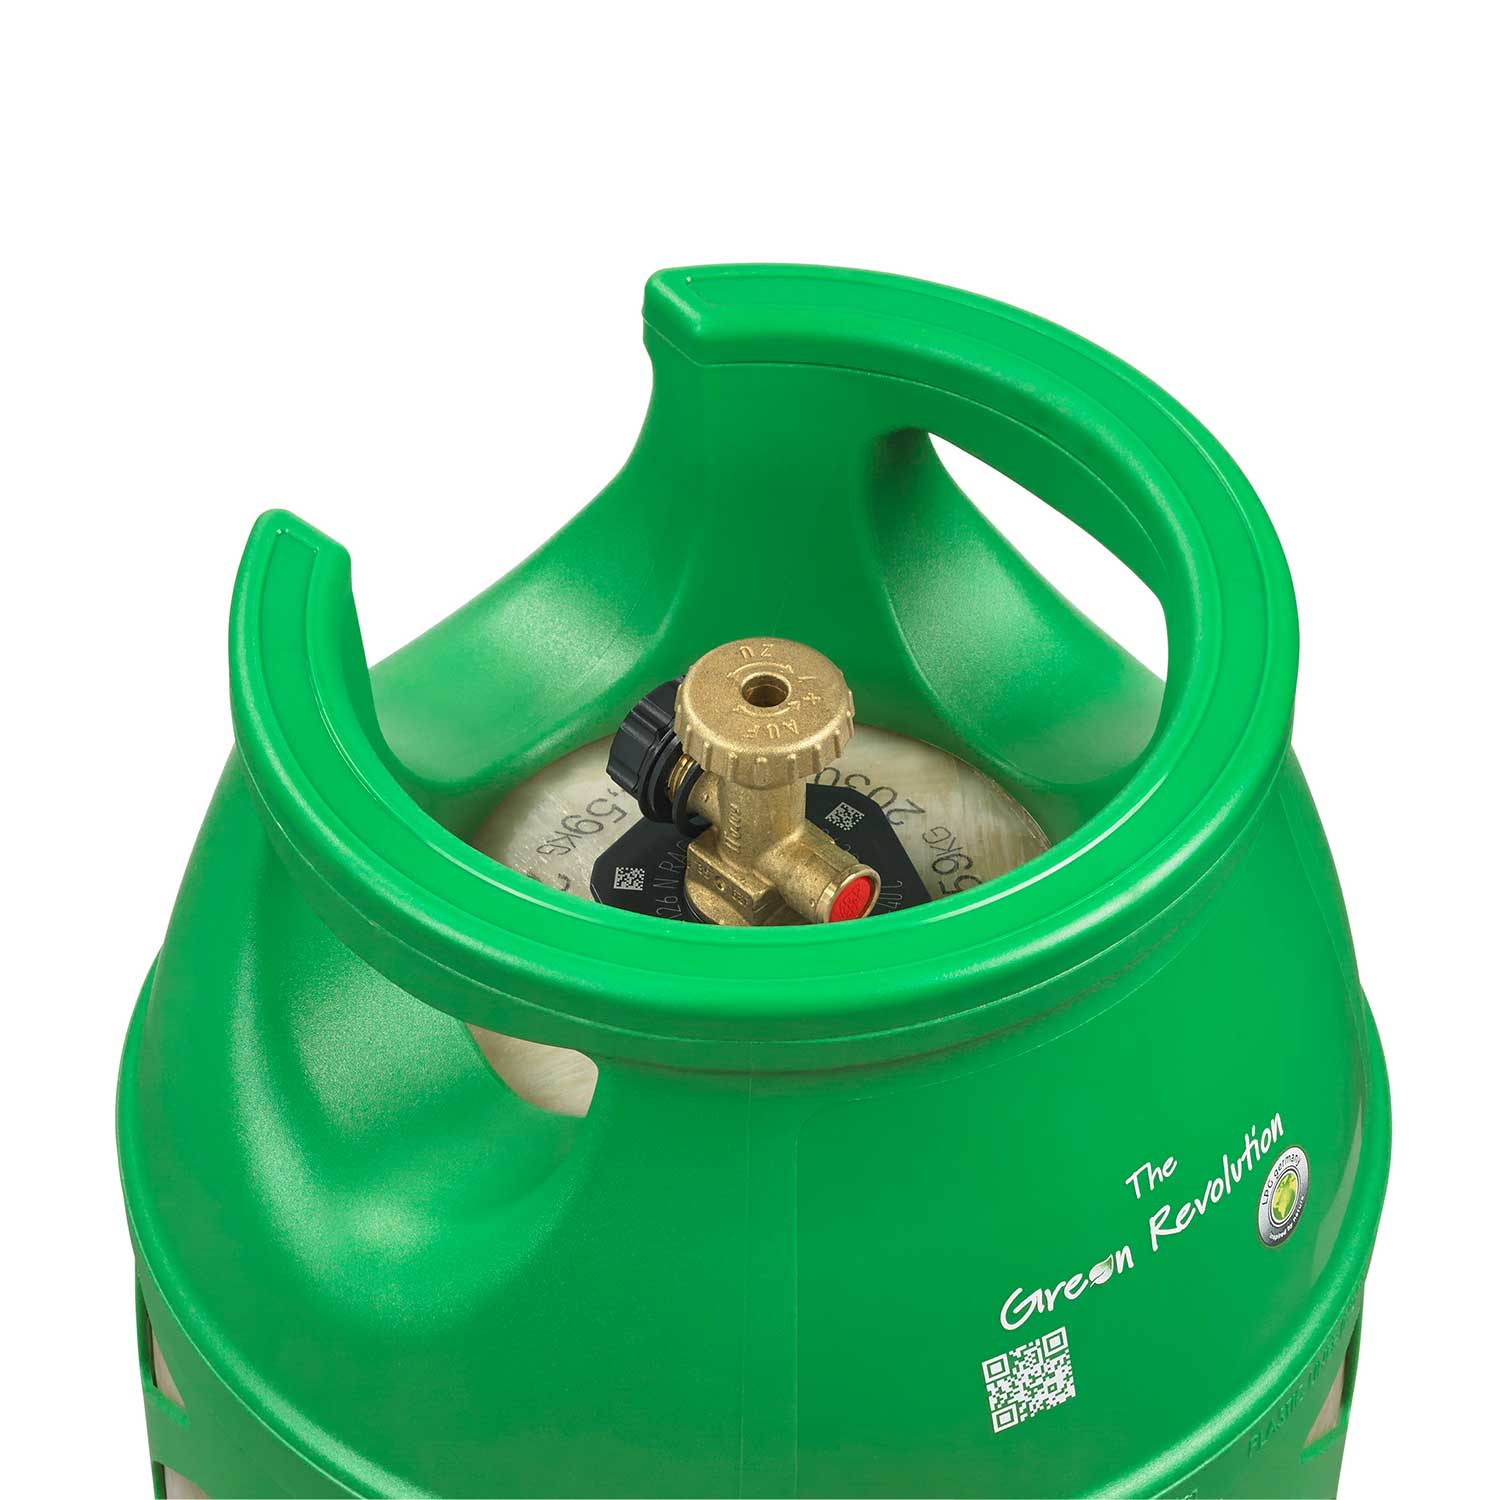 Composite Gasflasche “The Green Revolution” 7,5 kg Deutsches